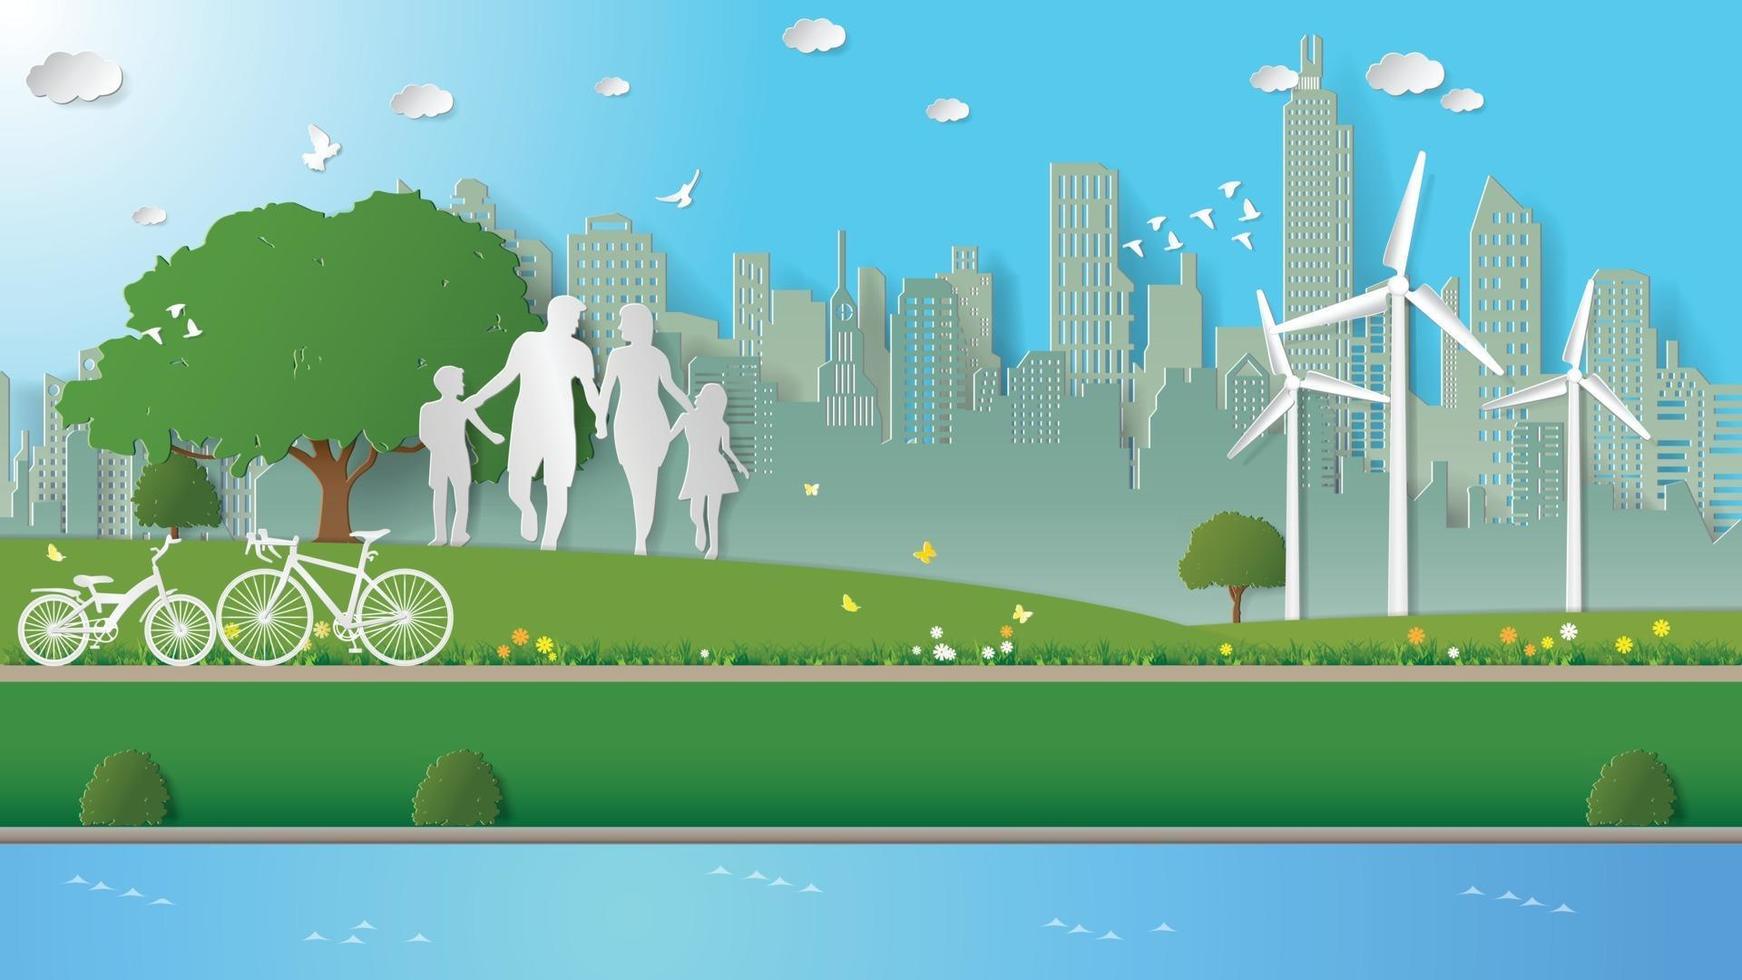 Papierfaltkunst Origami-Stil Vektor-Illustration erneuerbare Energie Ökologie nachhaltige Entwicklungstechnologie mit Menschenkonzepten, Familie geht im Park der grünen Stadt spazieren. vektor